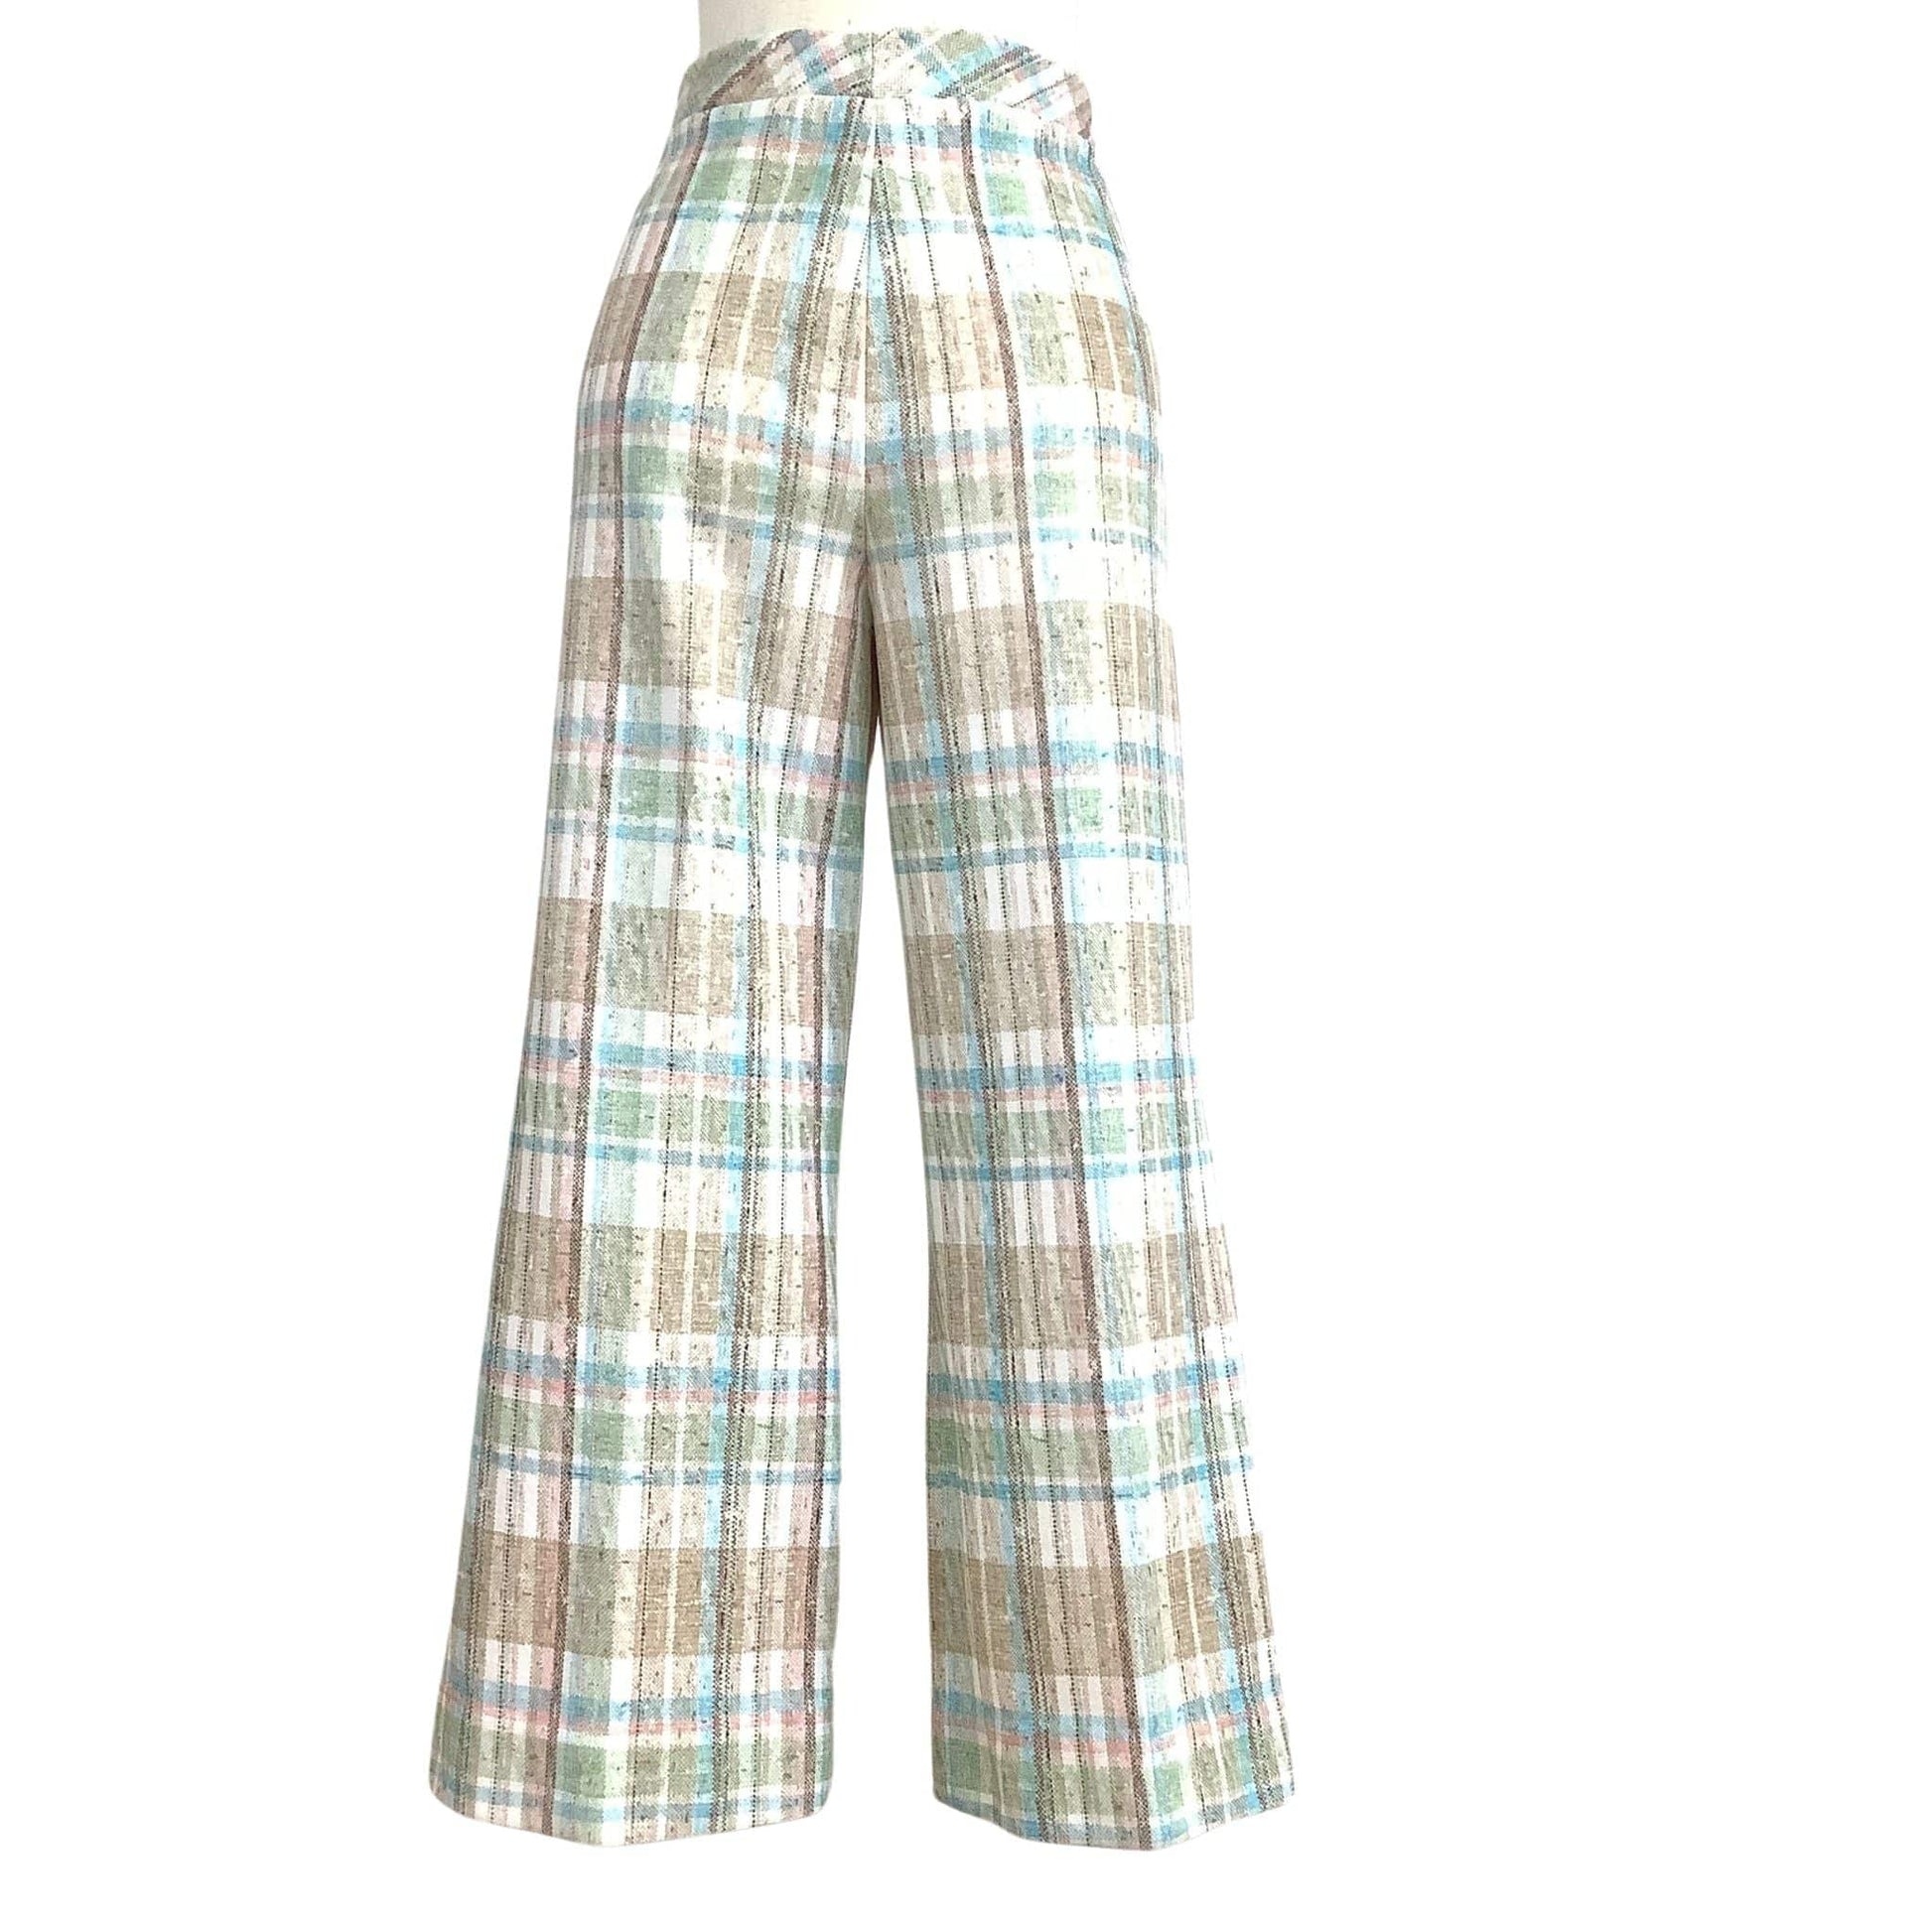 Vintage Checkered Pants Medium / Multi / Vintage 1980s